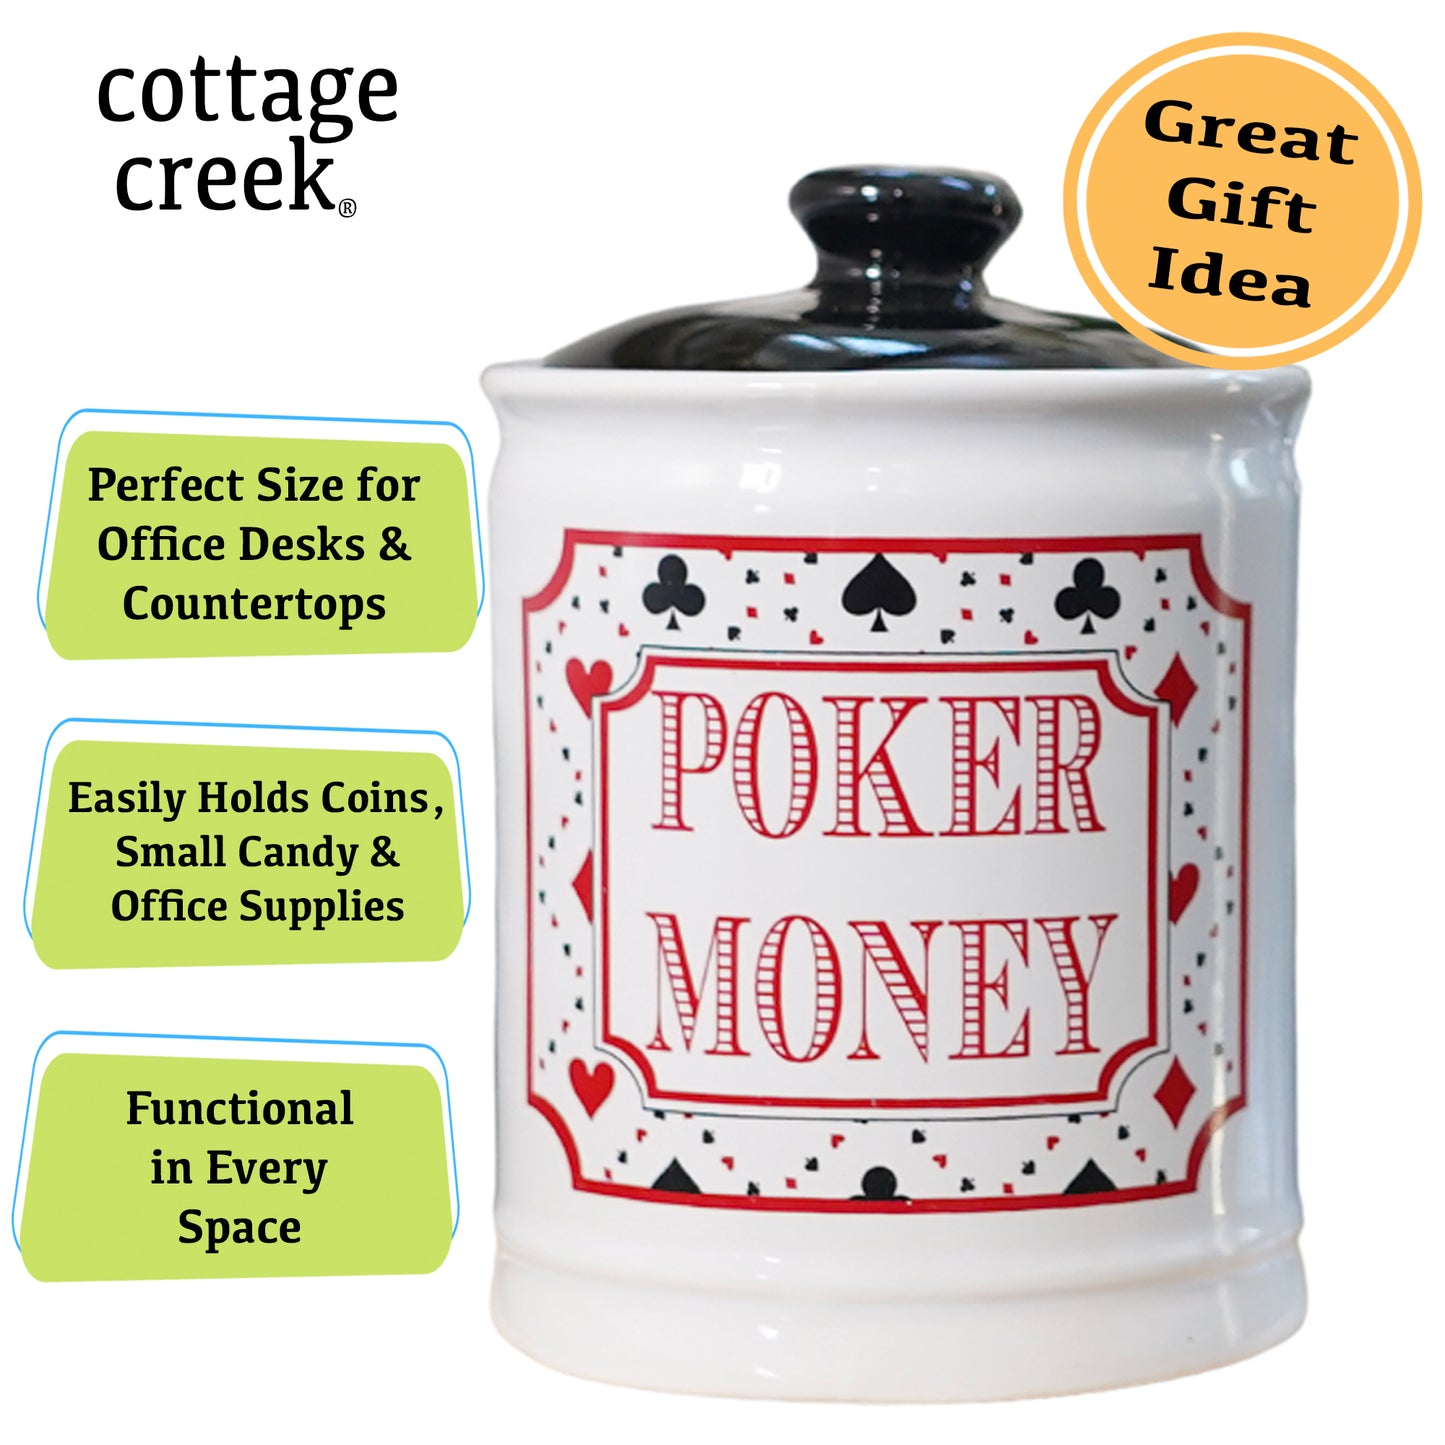 Poker Money Jar, Poker Piggy Bank for Poker Players